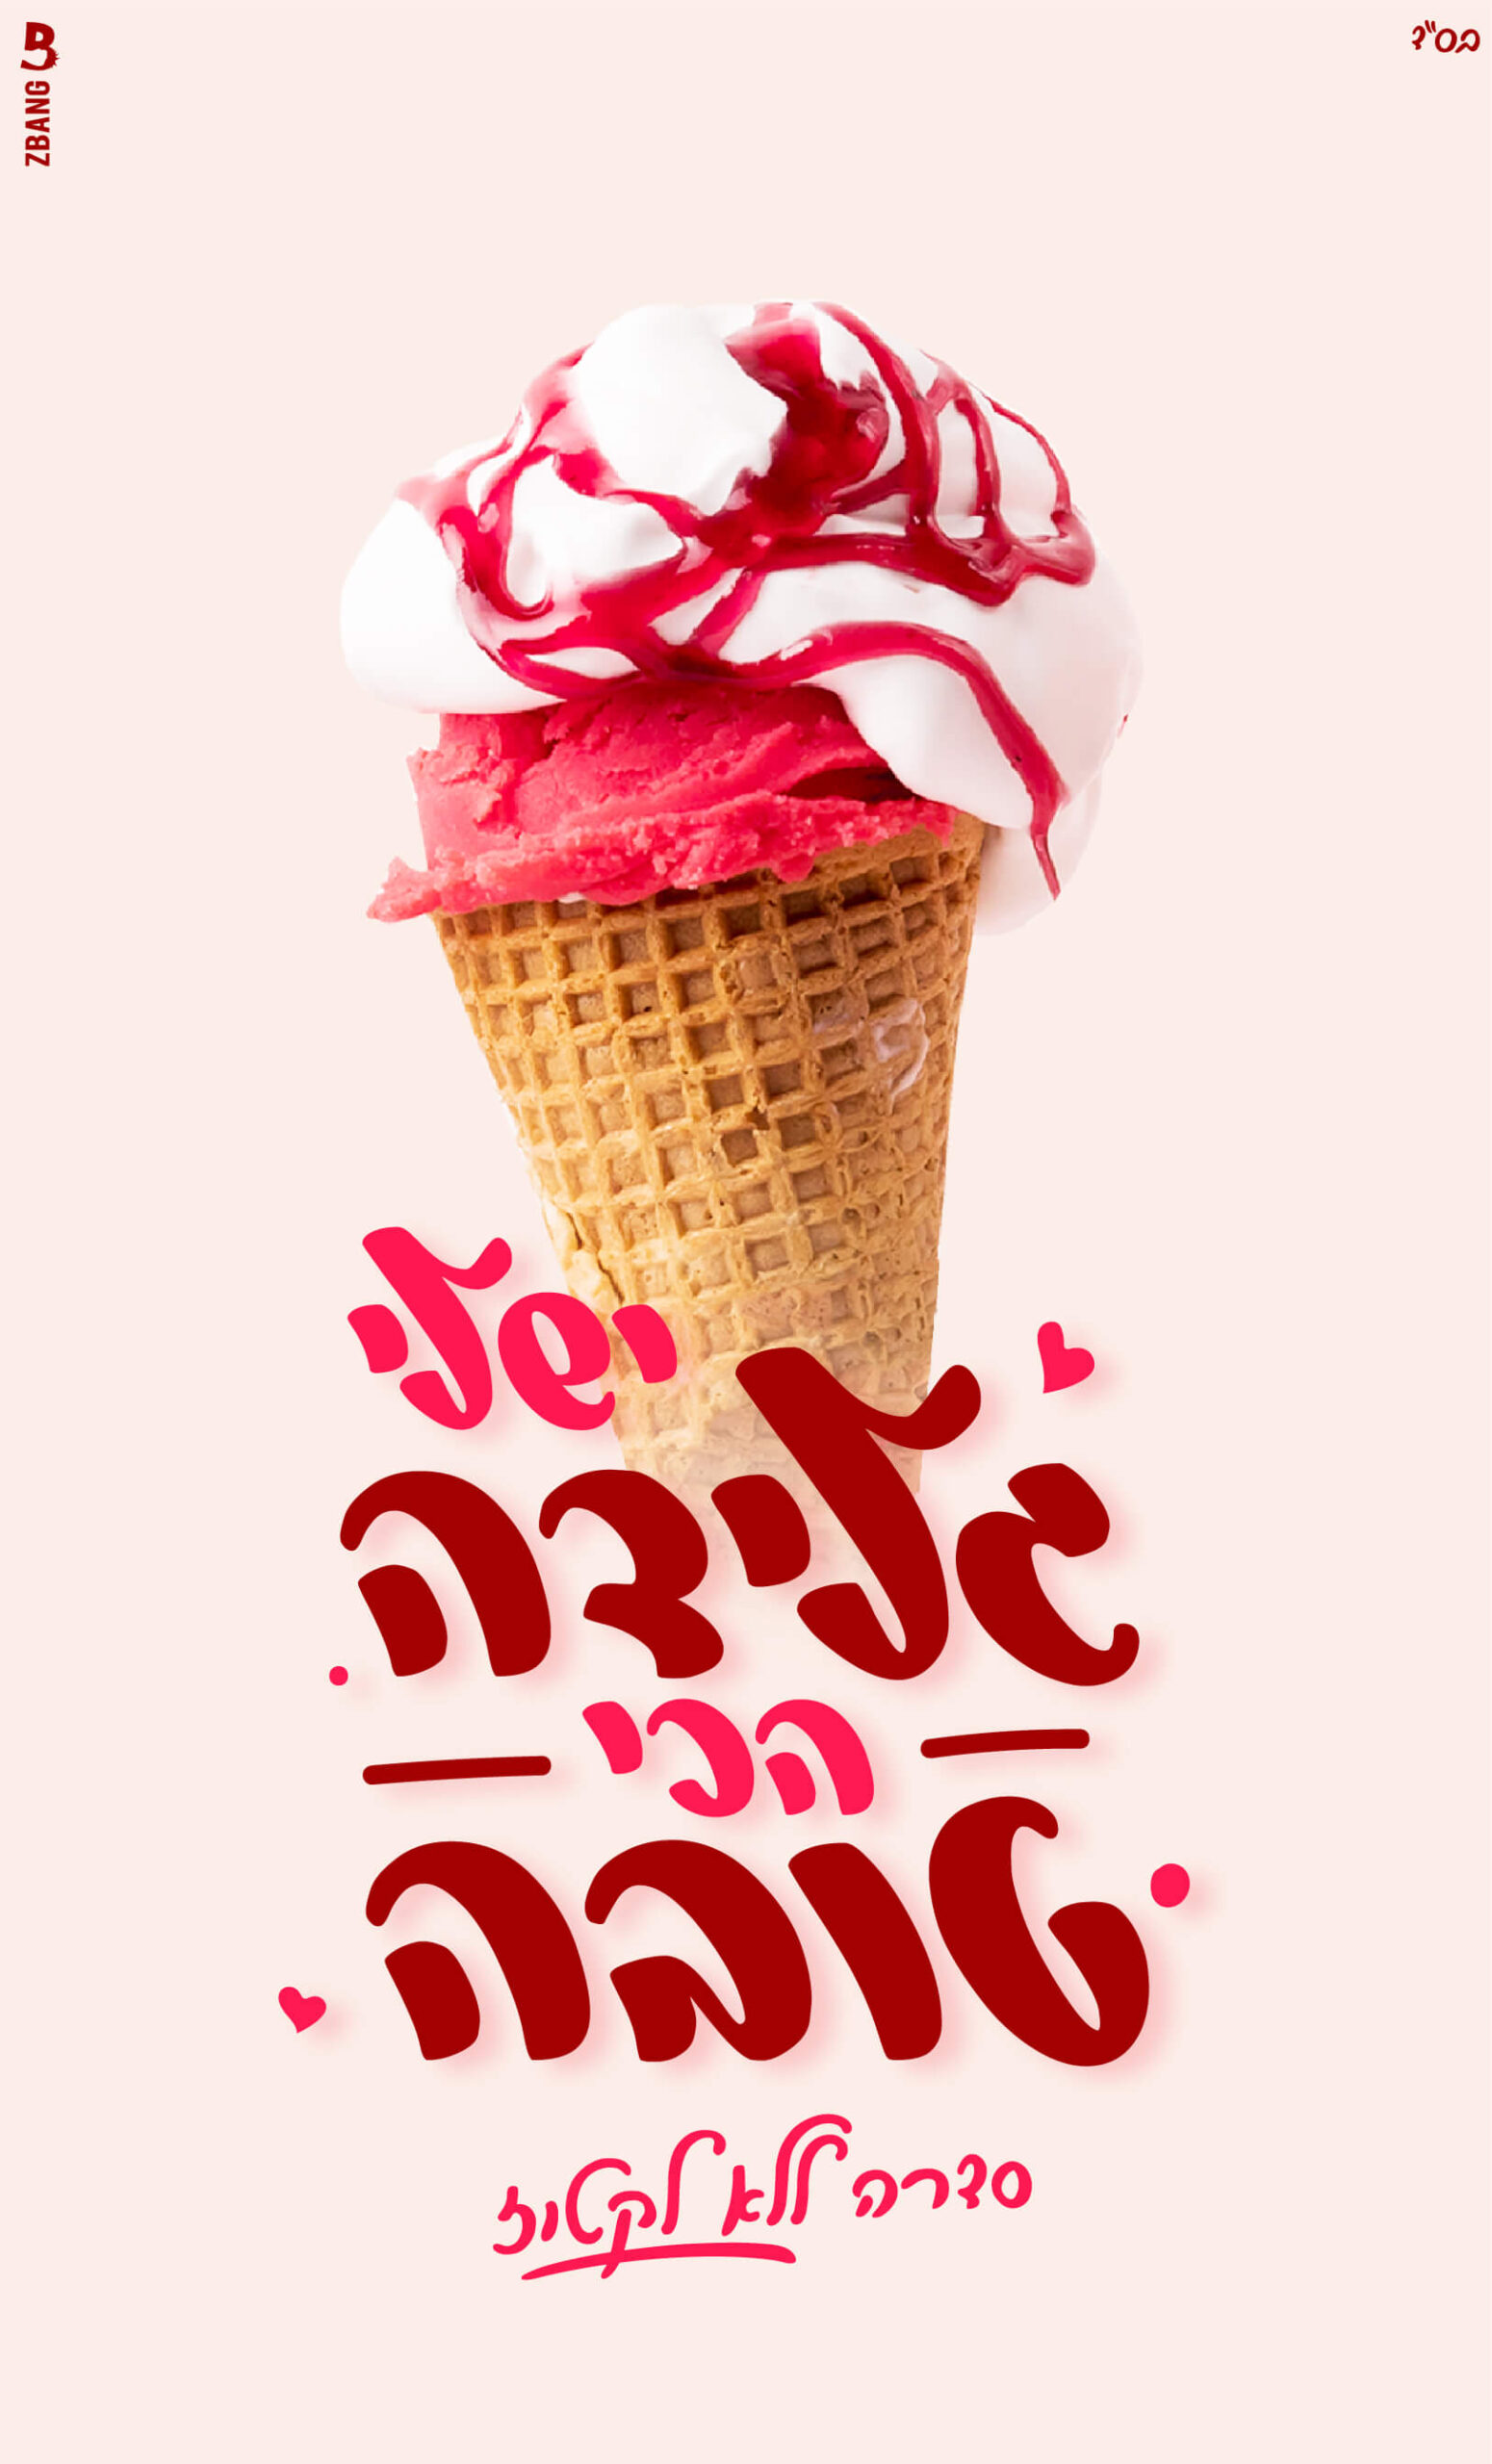 עיצוב גלידה 1 מאת רבקה הרוש עם פונט מלוטש ופונט עורבני כתבי יד בעברית